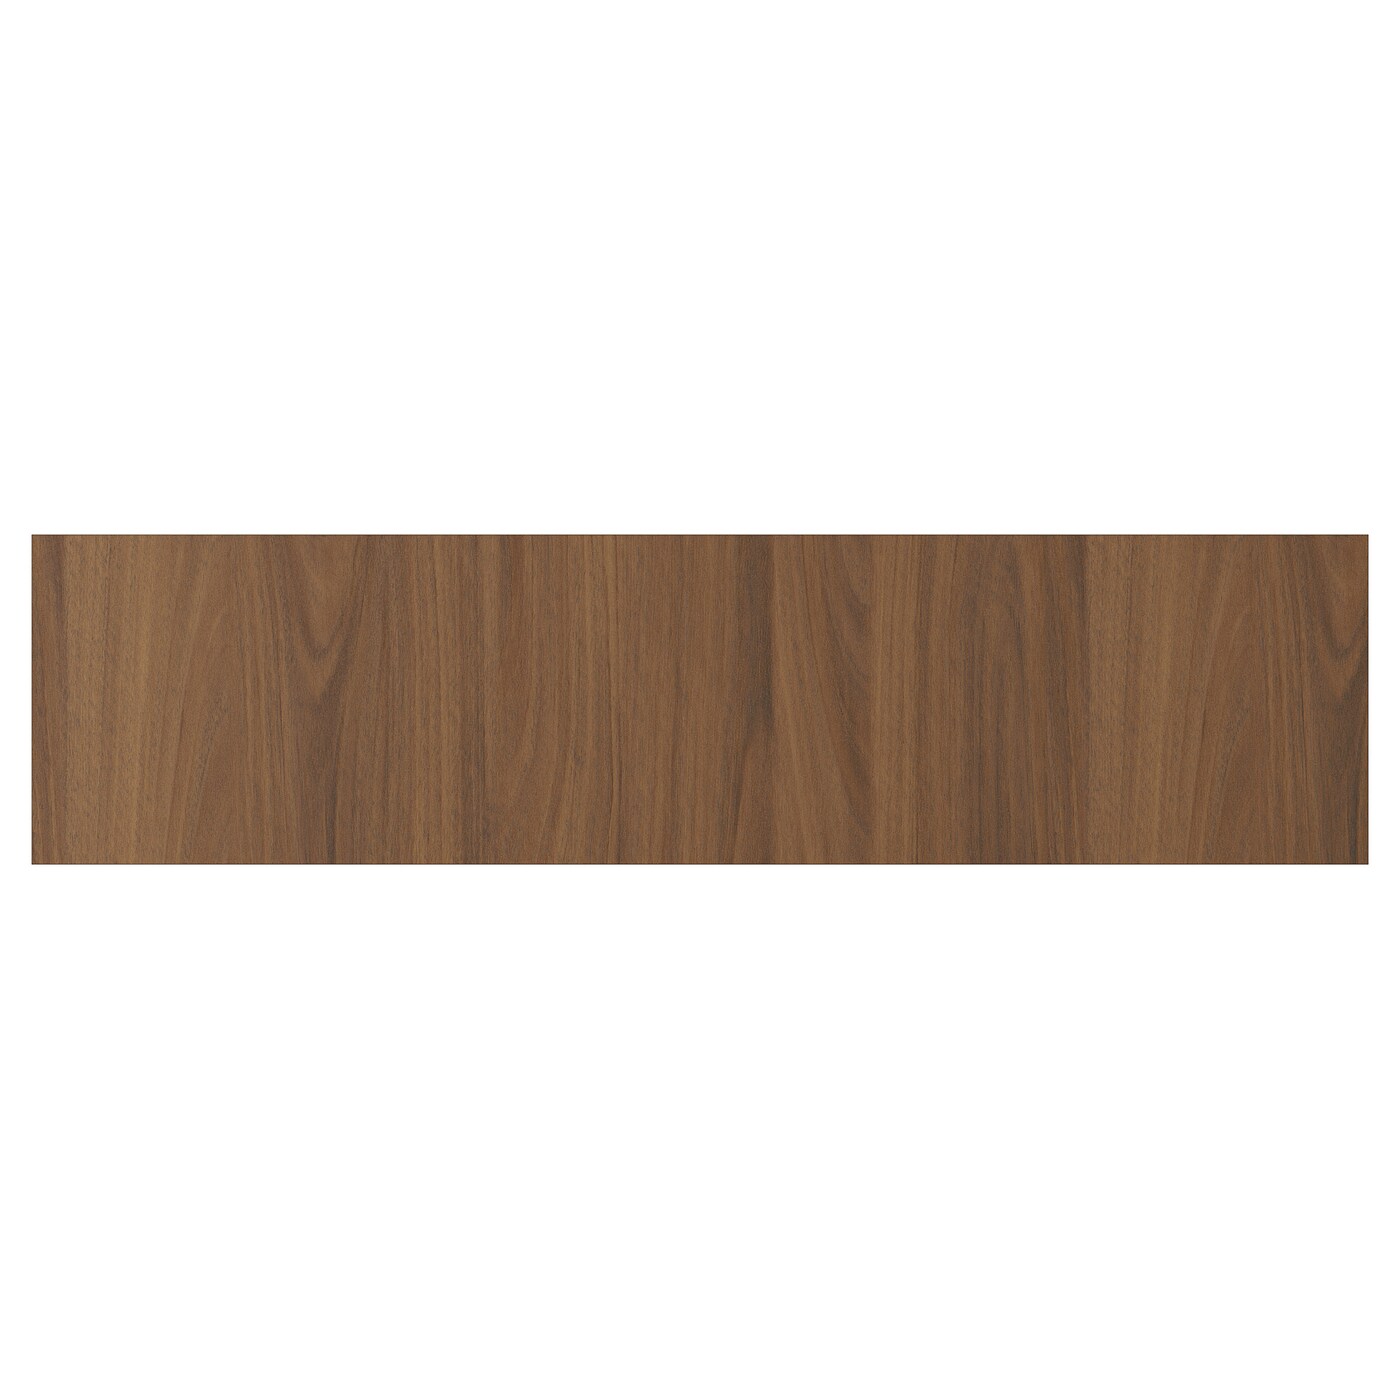 Дверца  - TISTORP IKEA/ ТИСТОРП ИКЕА,  80х20 см, коричневый